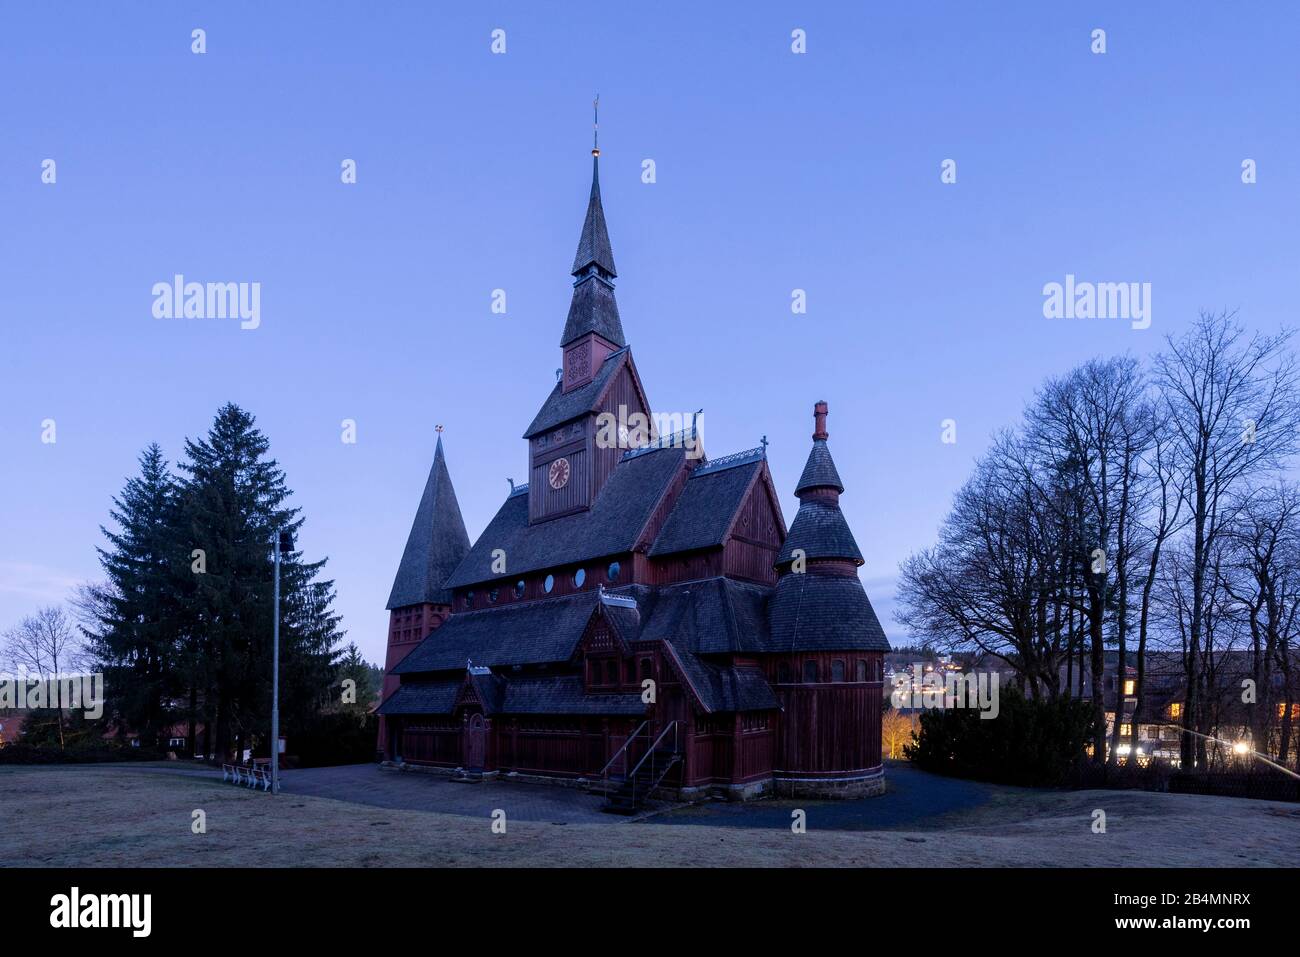 Germania, Bassa Sassonia, Harz, Goslar, Chiesa di Gustav Adolf Stave a Hahnenklee, costruita tra il 1907 e il 1908, modellata sulla chiesa di nave di Borgund in Norvegia. Foto Stock